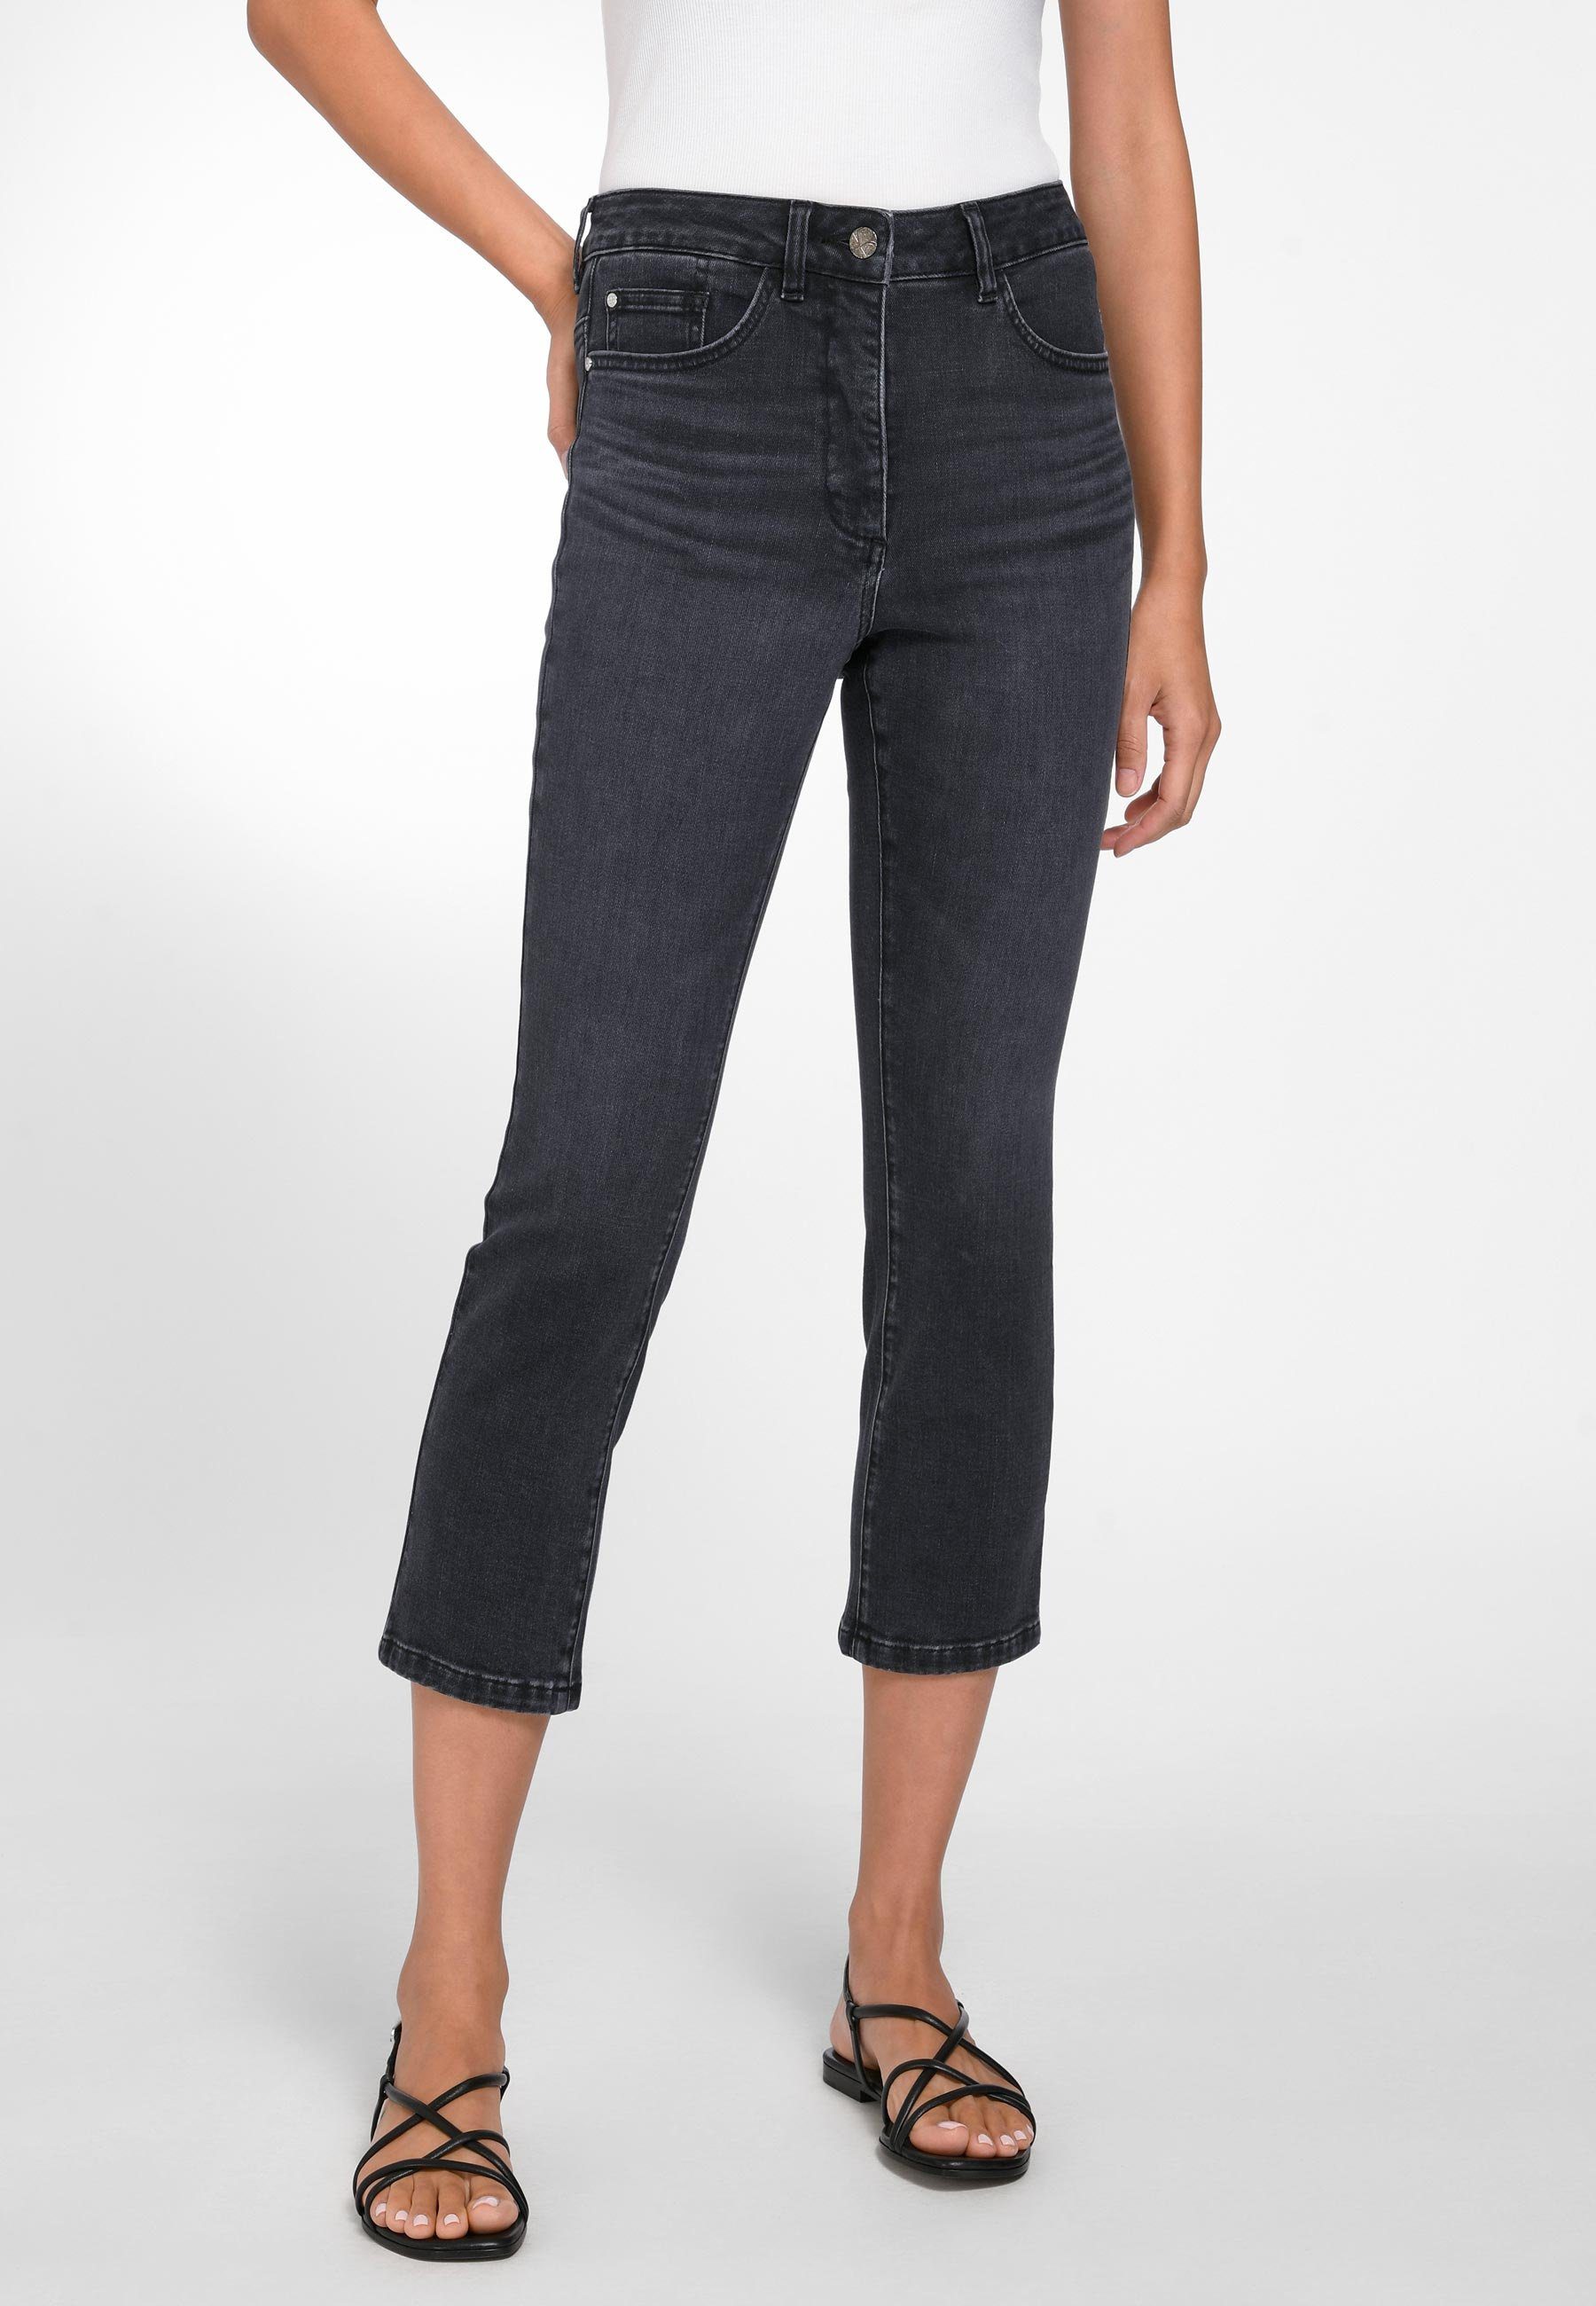 Basler grau 7/8-Jeans Cotton